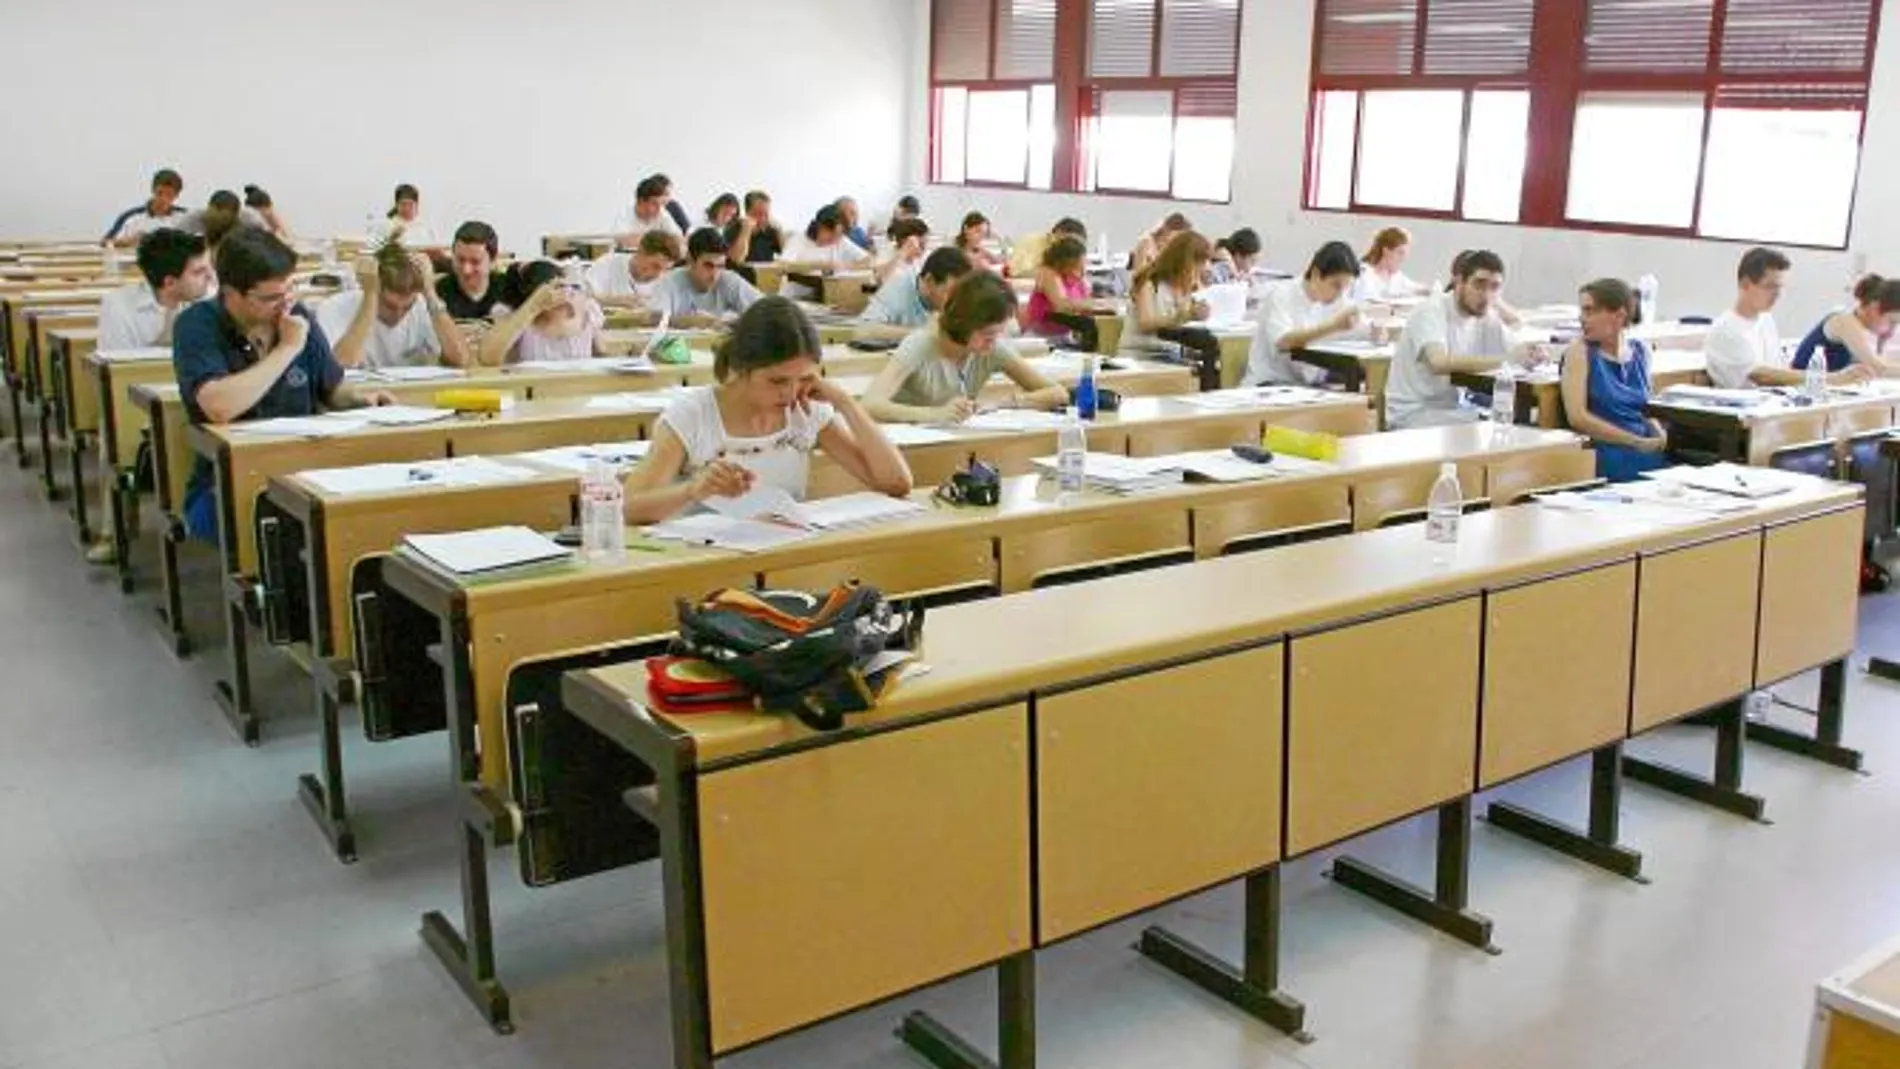 La subida de tasas afectará a 70000 universitarios castellanos y leoneses